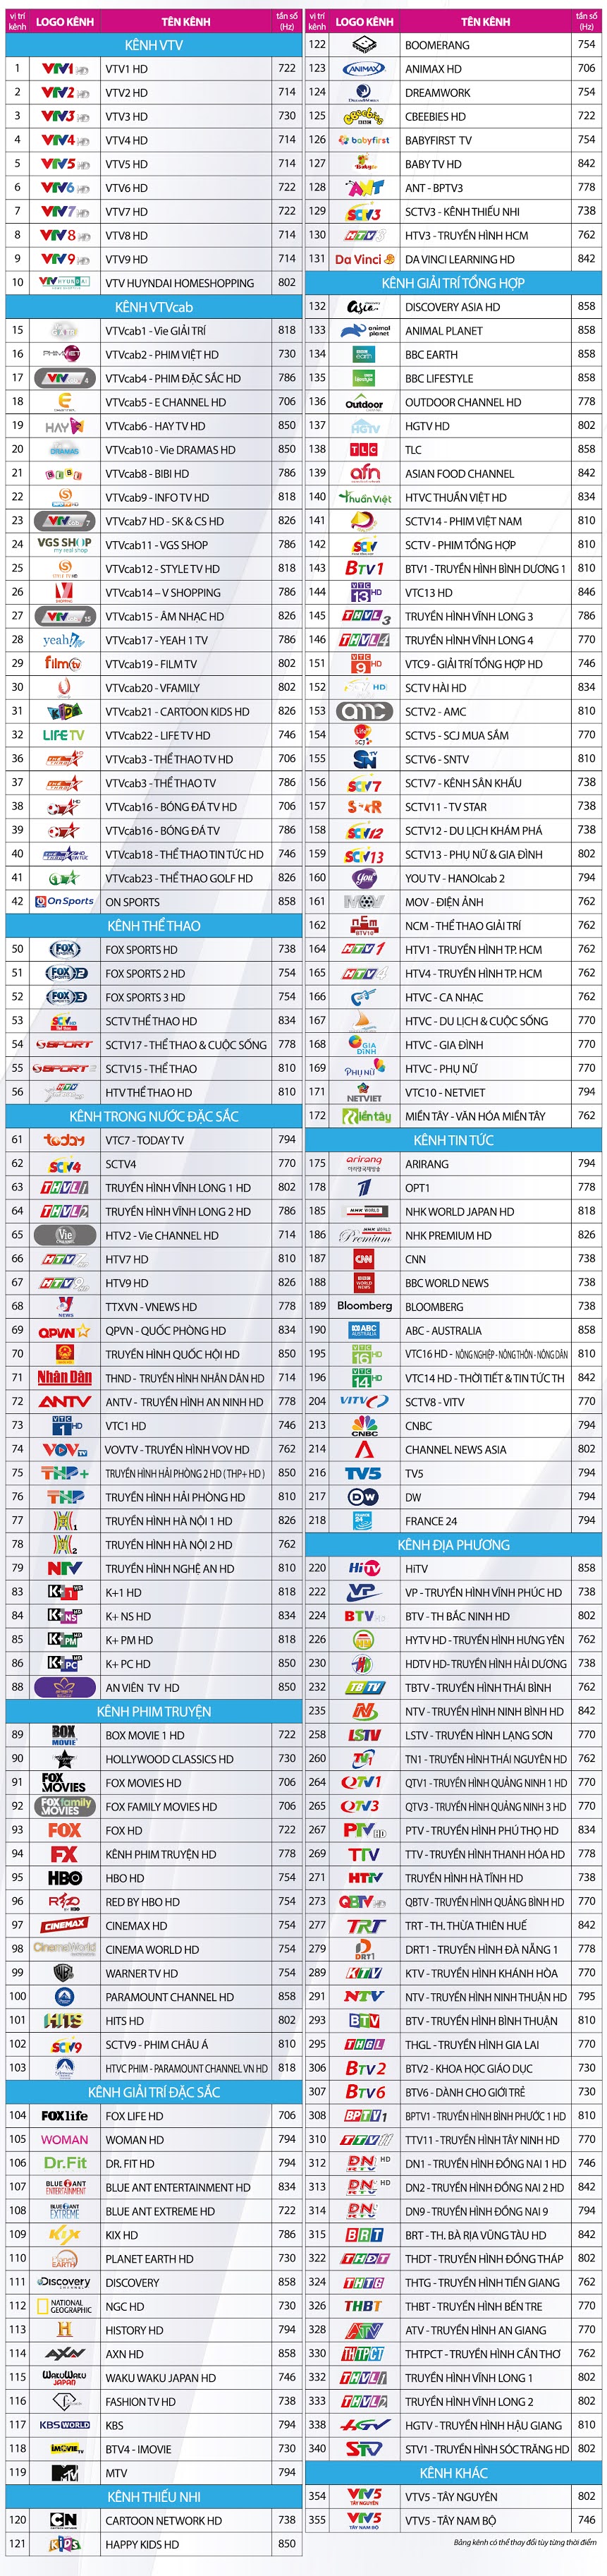 Danh sách kênh trên hệ thống VTVcab tại Hà Nội tháng 3-2021